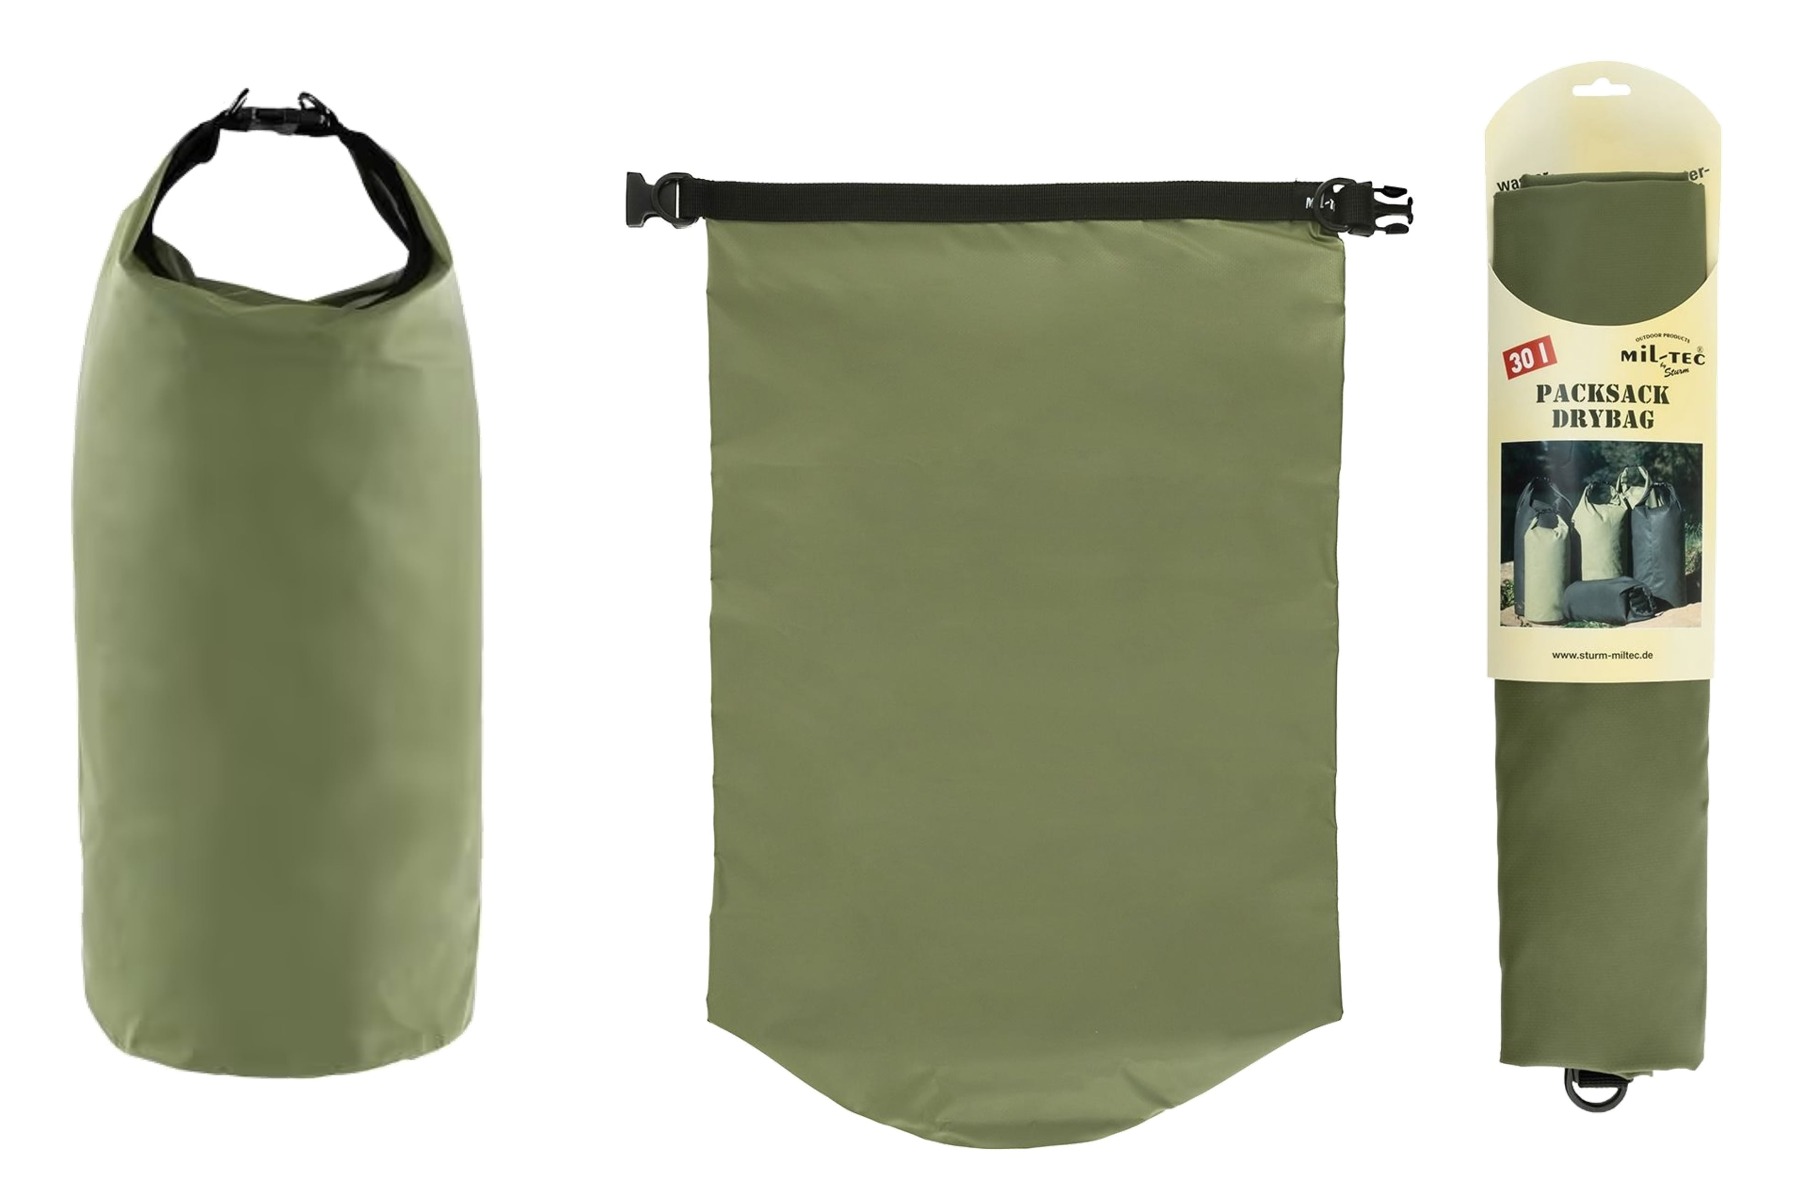 Dry Bag 30 Miltec - Nepremočljiva vreča z 30 litri prostornine za vojaške nahrbtnike srednjega volumna. Vodoodporna in trpežna olivno zelena vreča je idealna za vojaške aktivnosti, potovanja, kamping in športne dejavnosti. Zaščitite svojo opremo pred vodo s to zanesljivo vrečo.